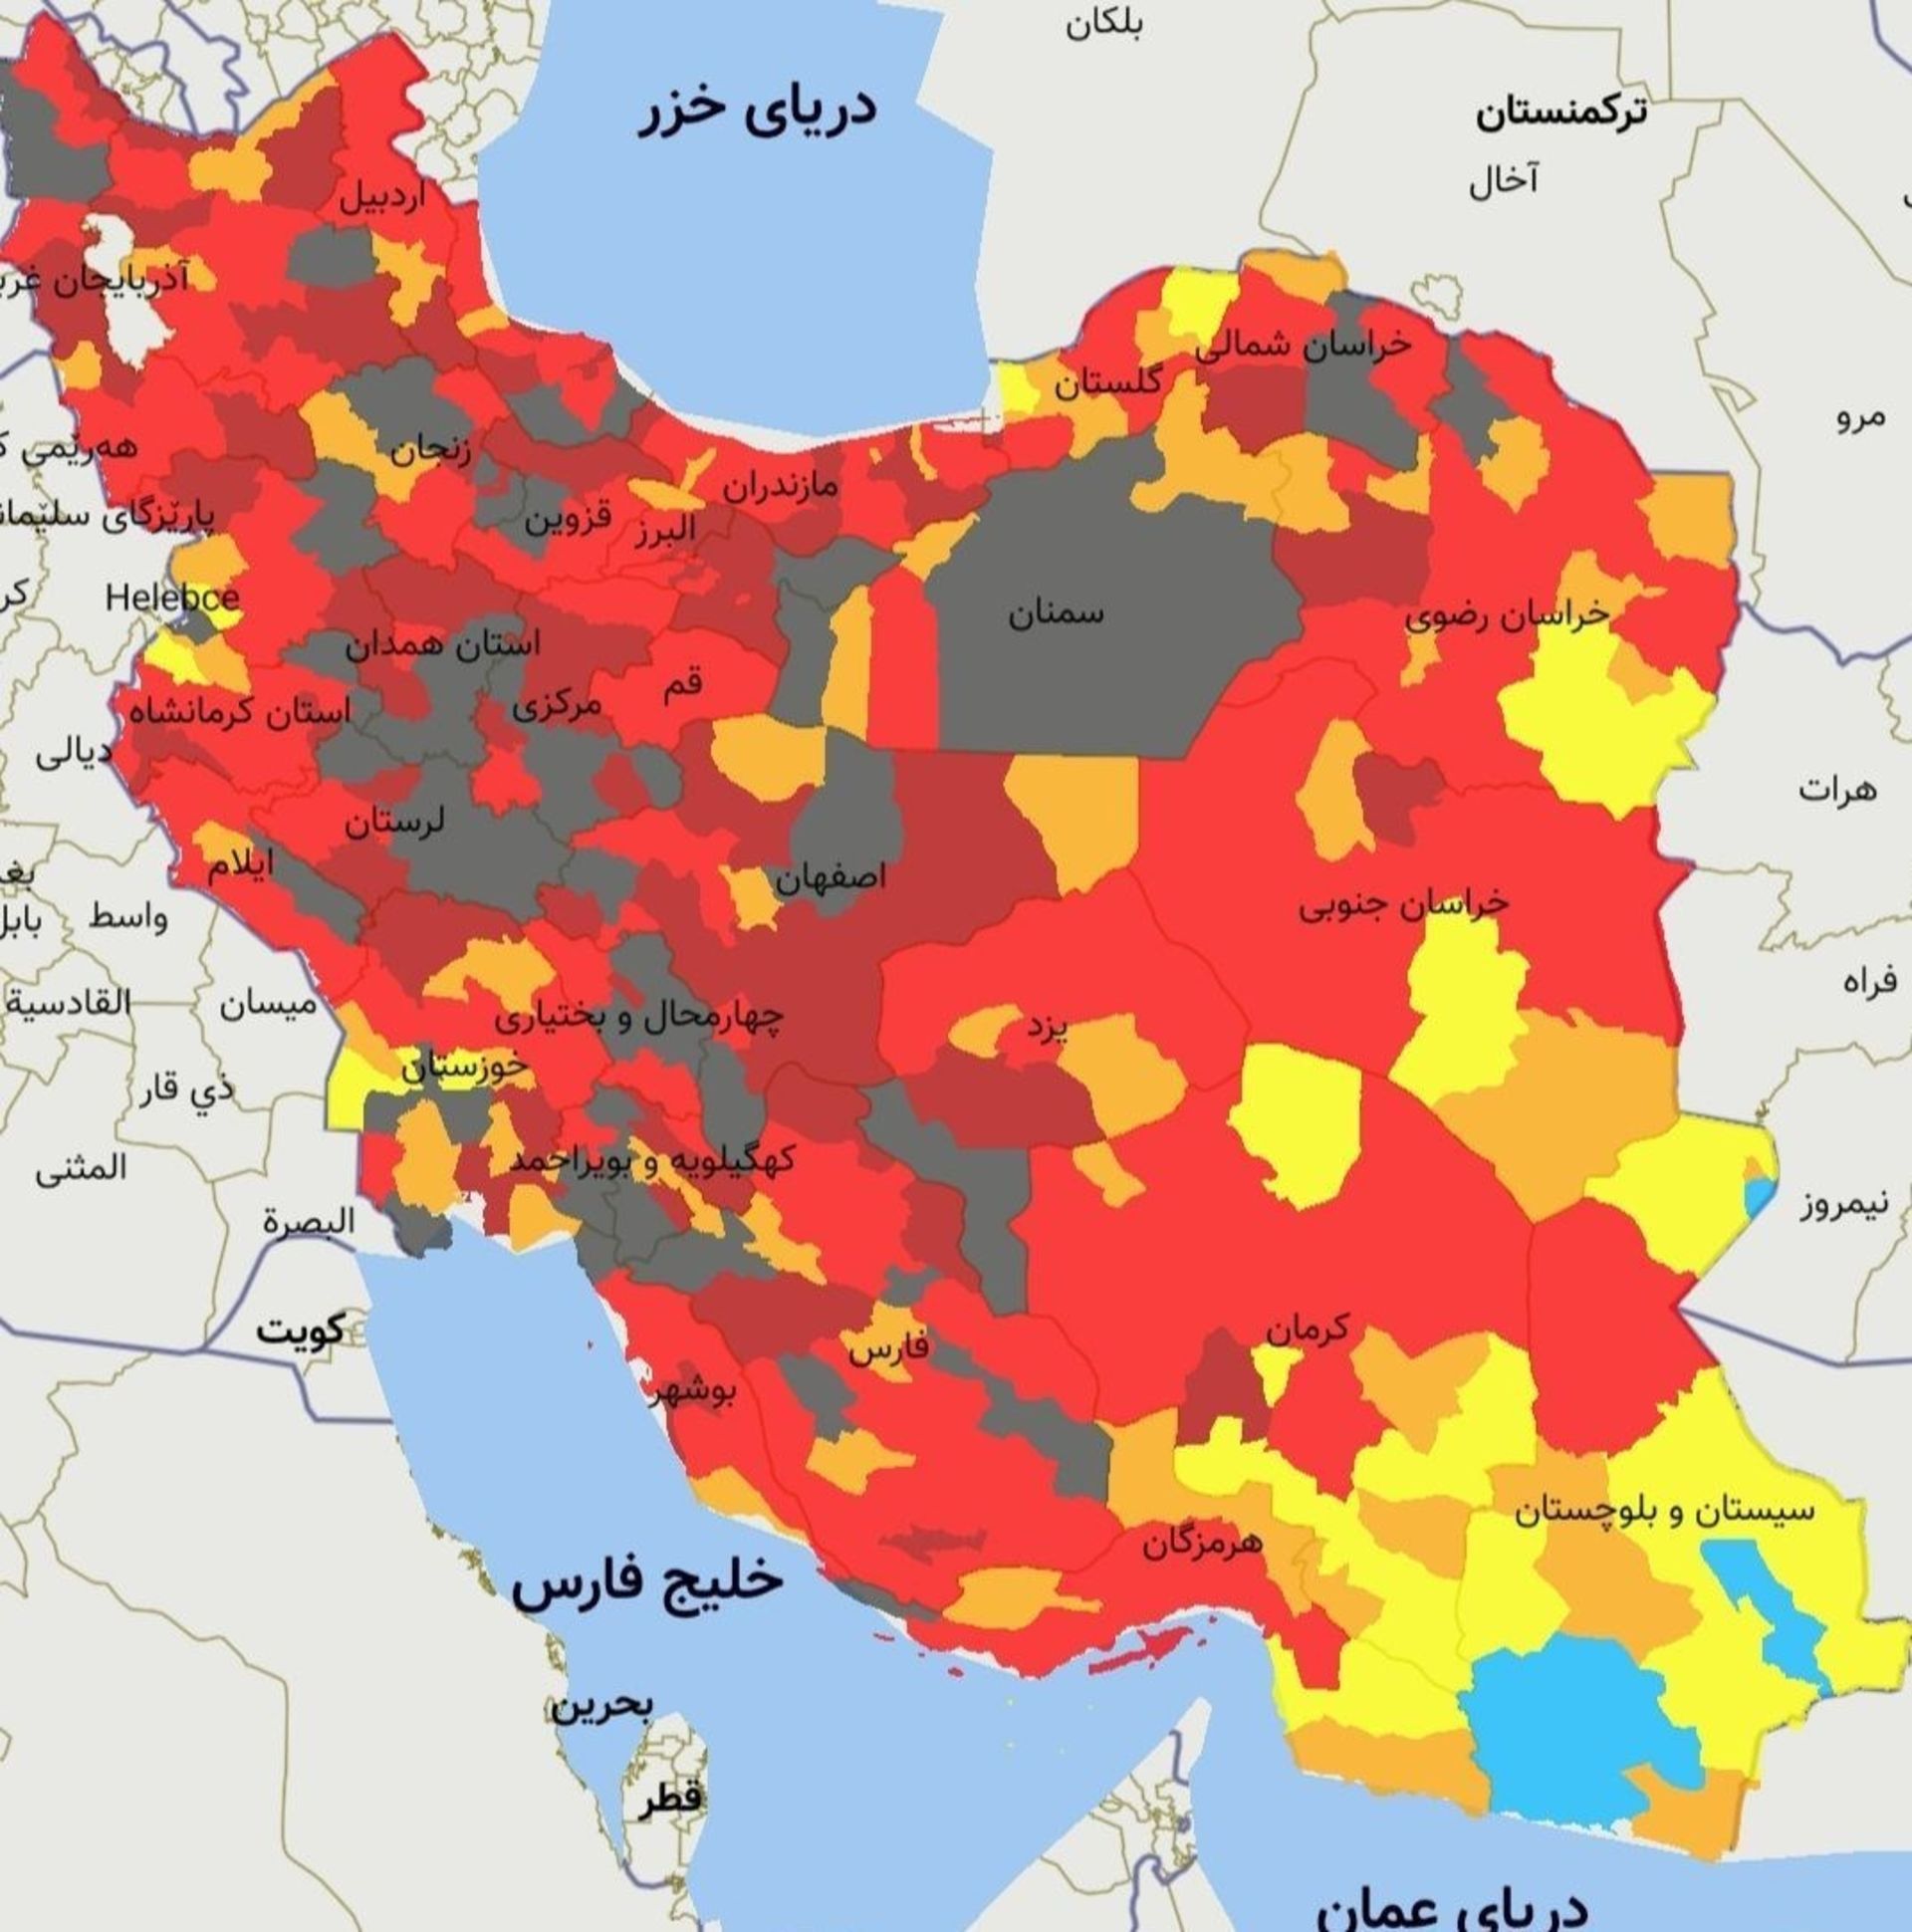 اضافه شدن رنگ سیاه به رنگ بندی کرونا روی نقشه ایران